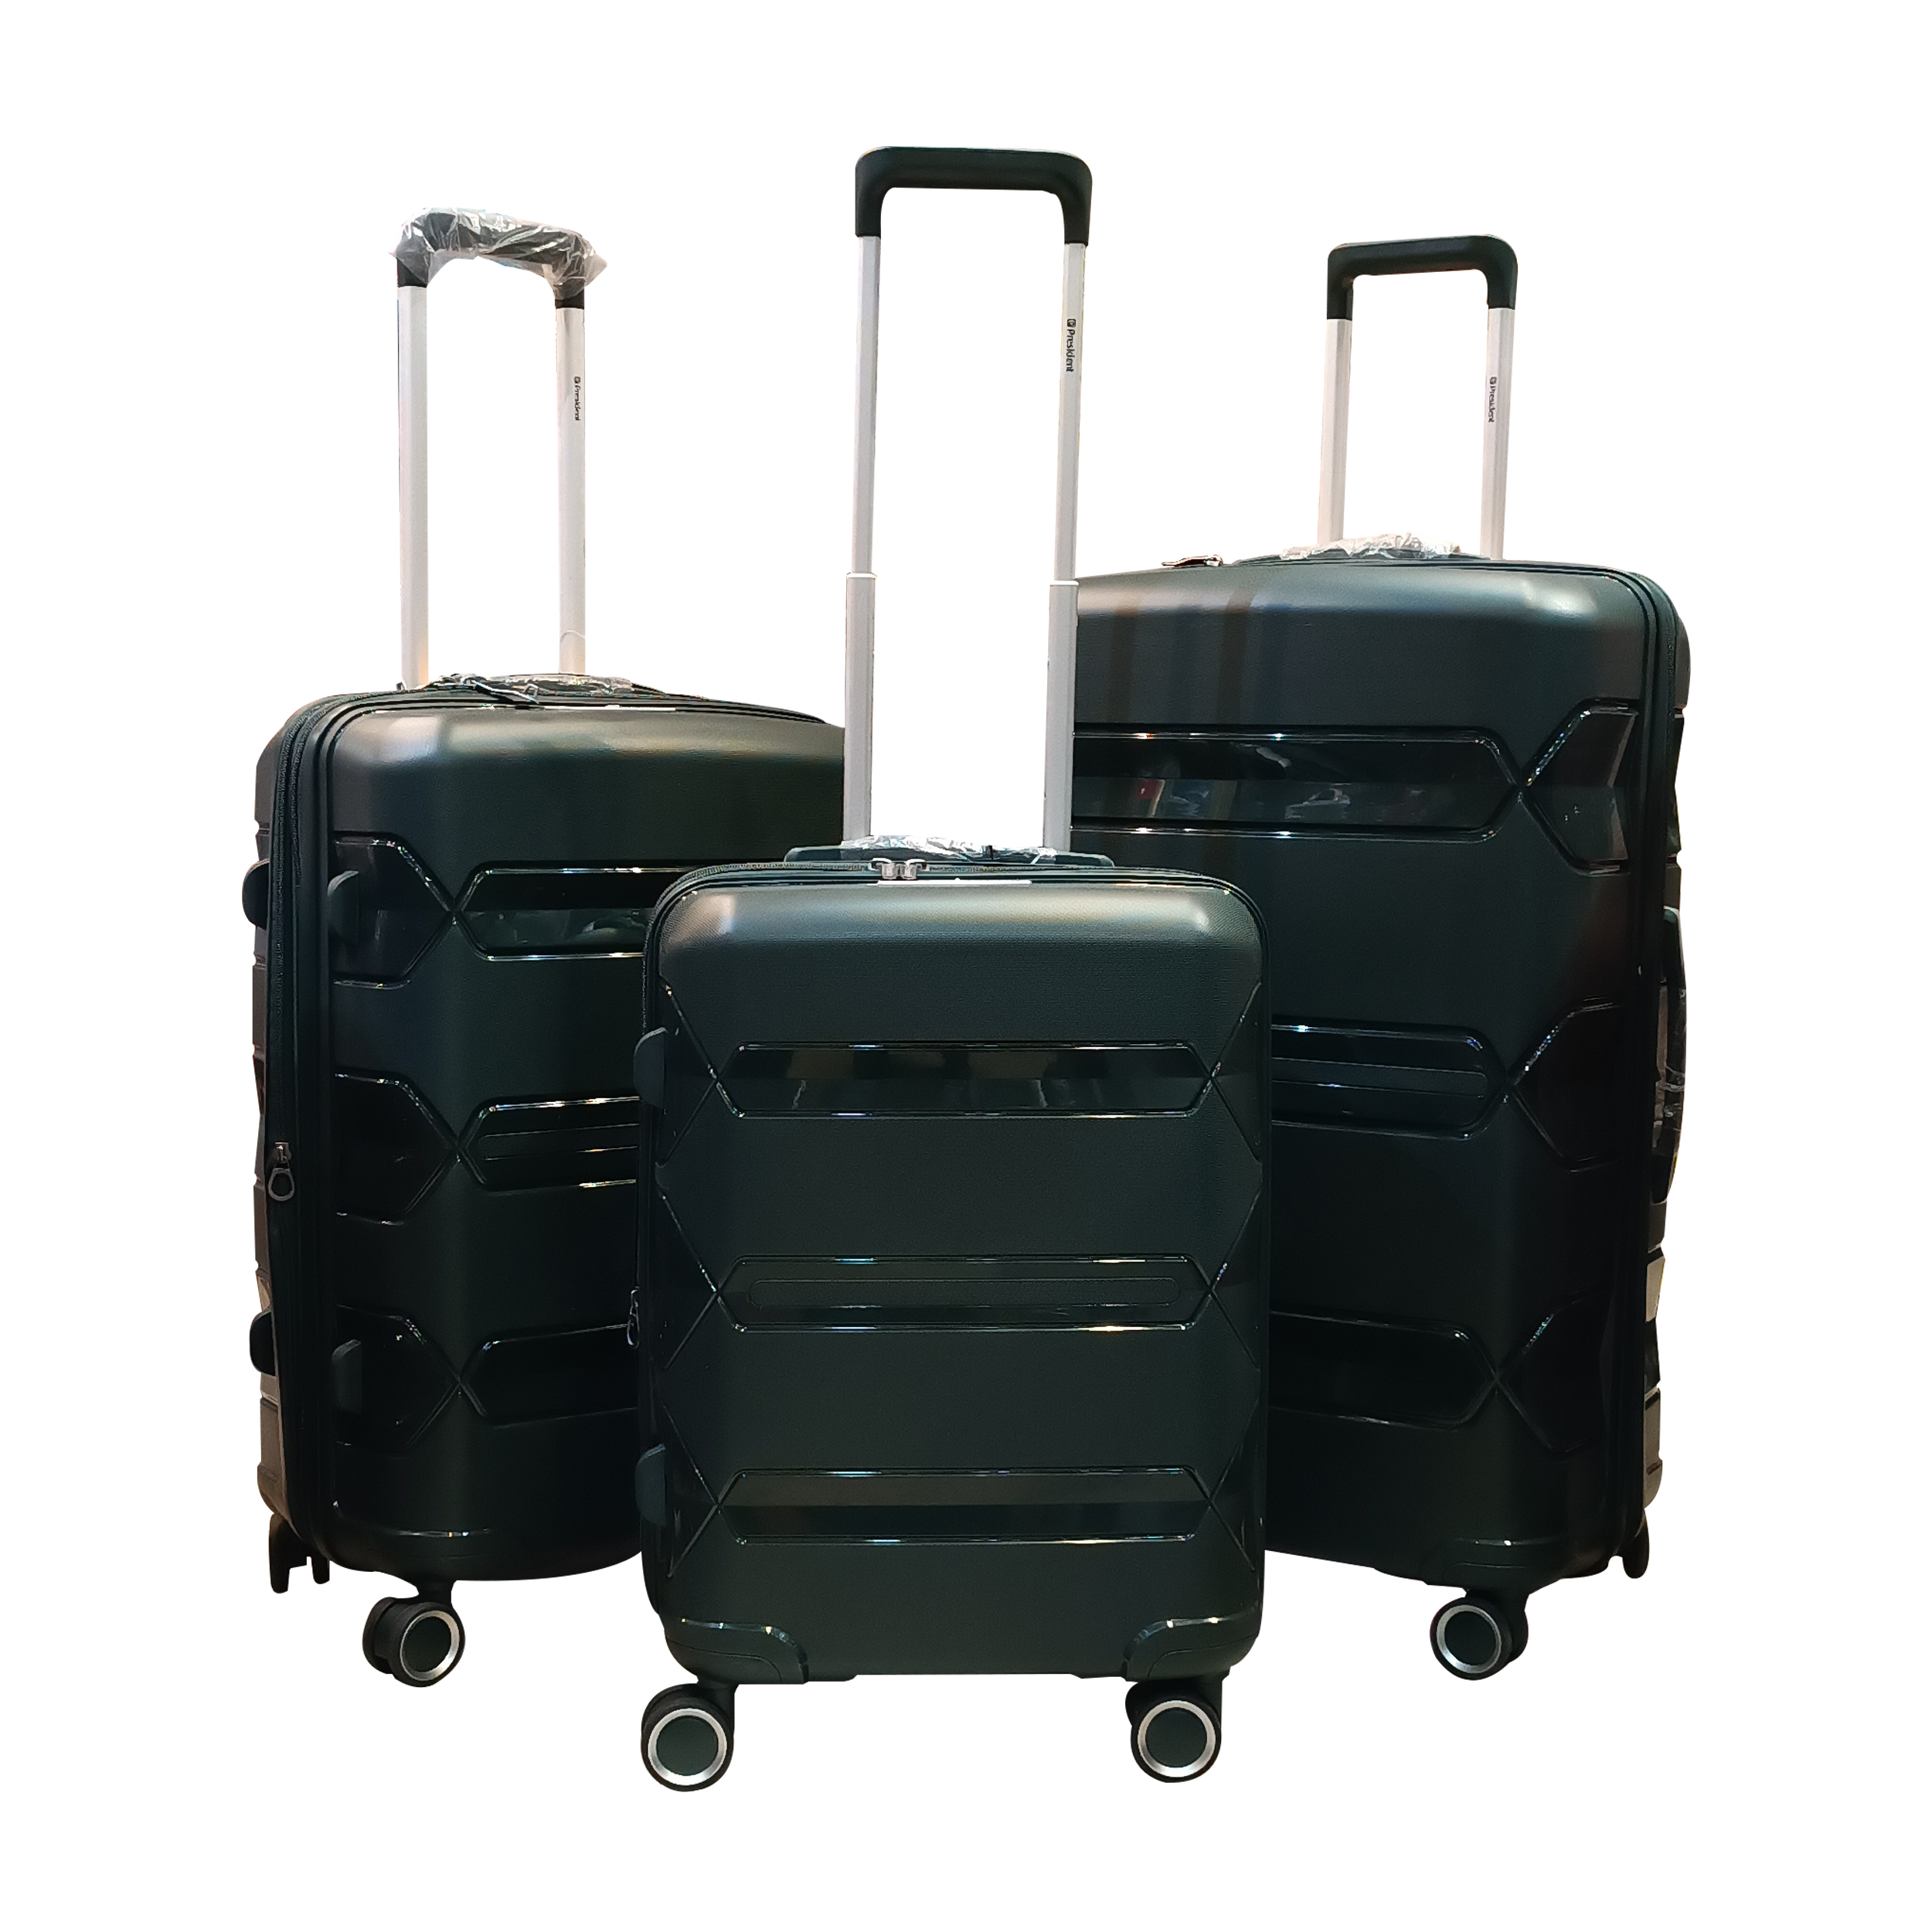 مجموعه سه عددی چمدان پرزیدنت مدل 01